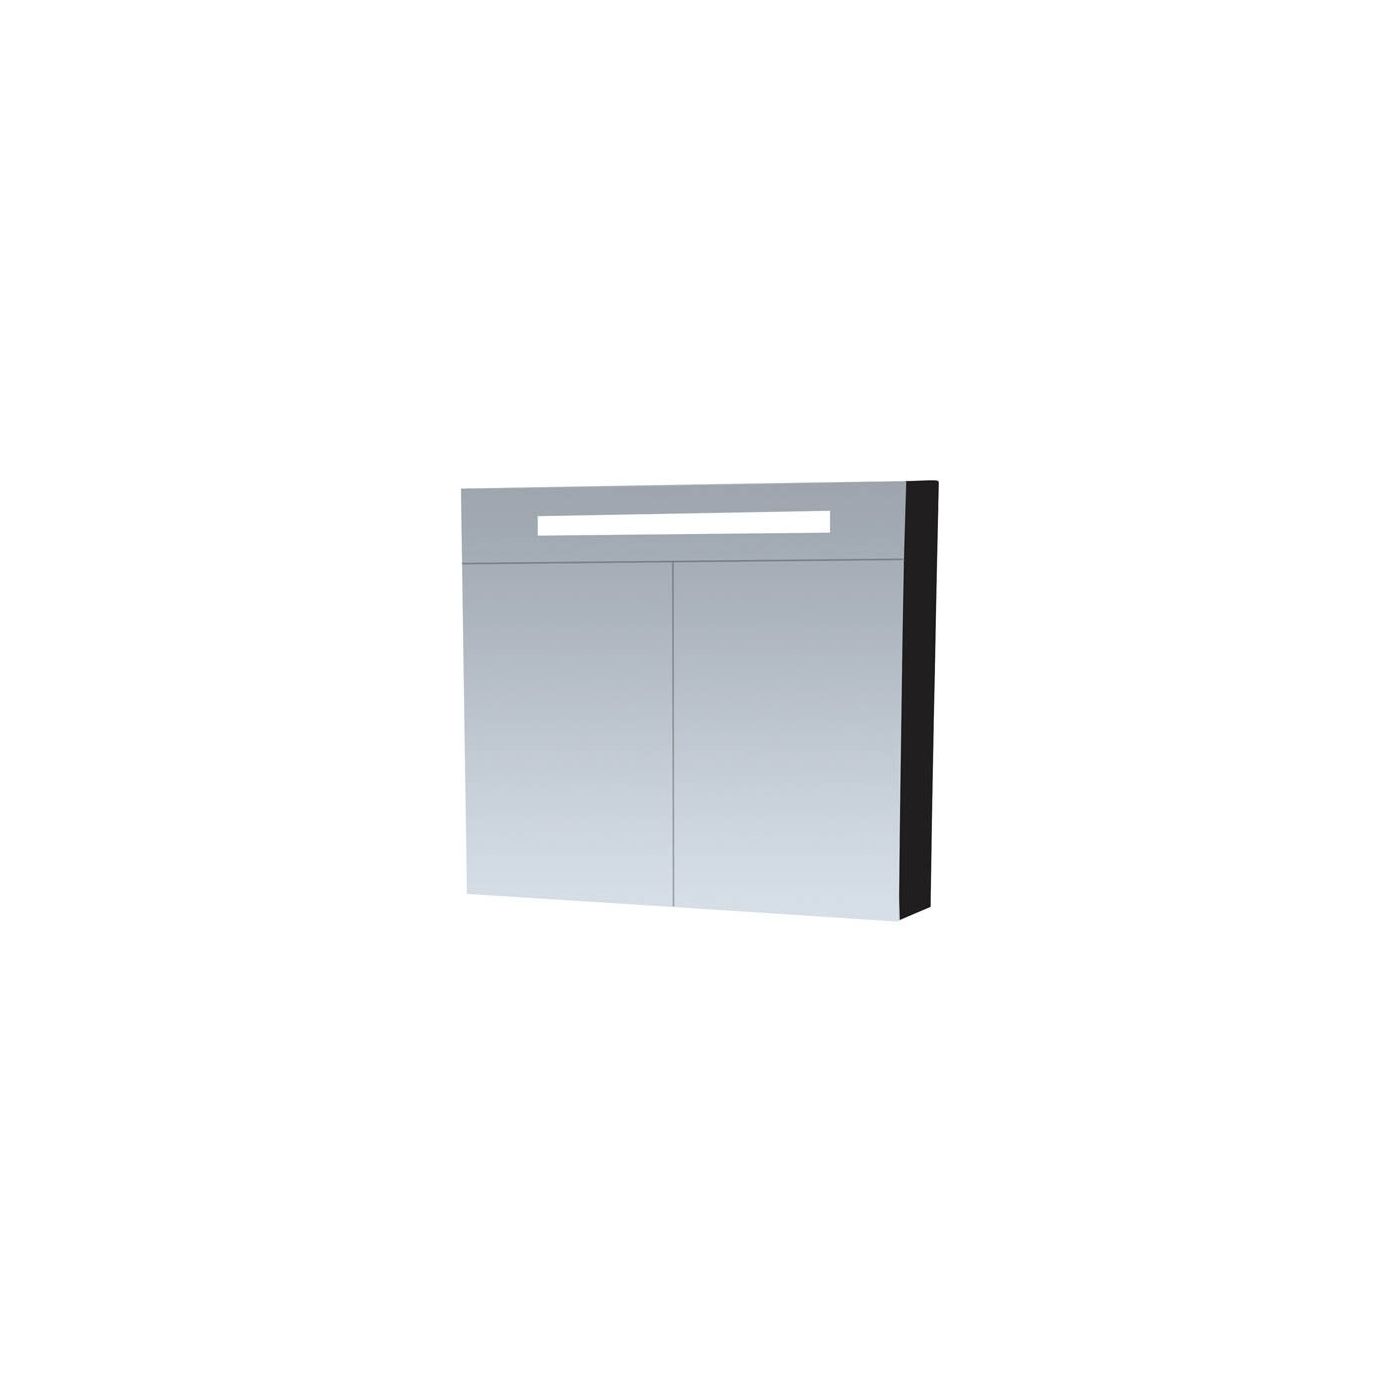 Tapo New Future spiegelkast Zwart 80cm dubbelzijdige spiegels, verlichting, & stopcontact